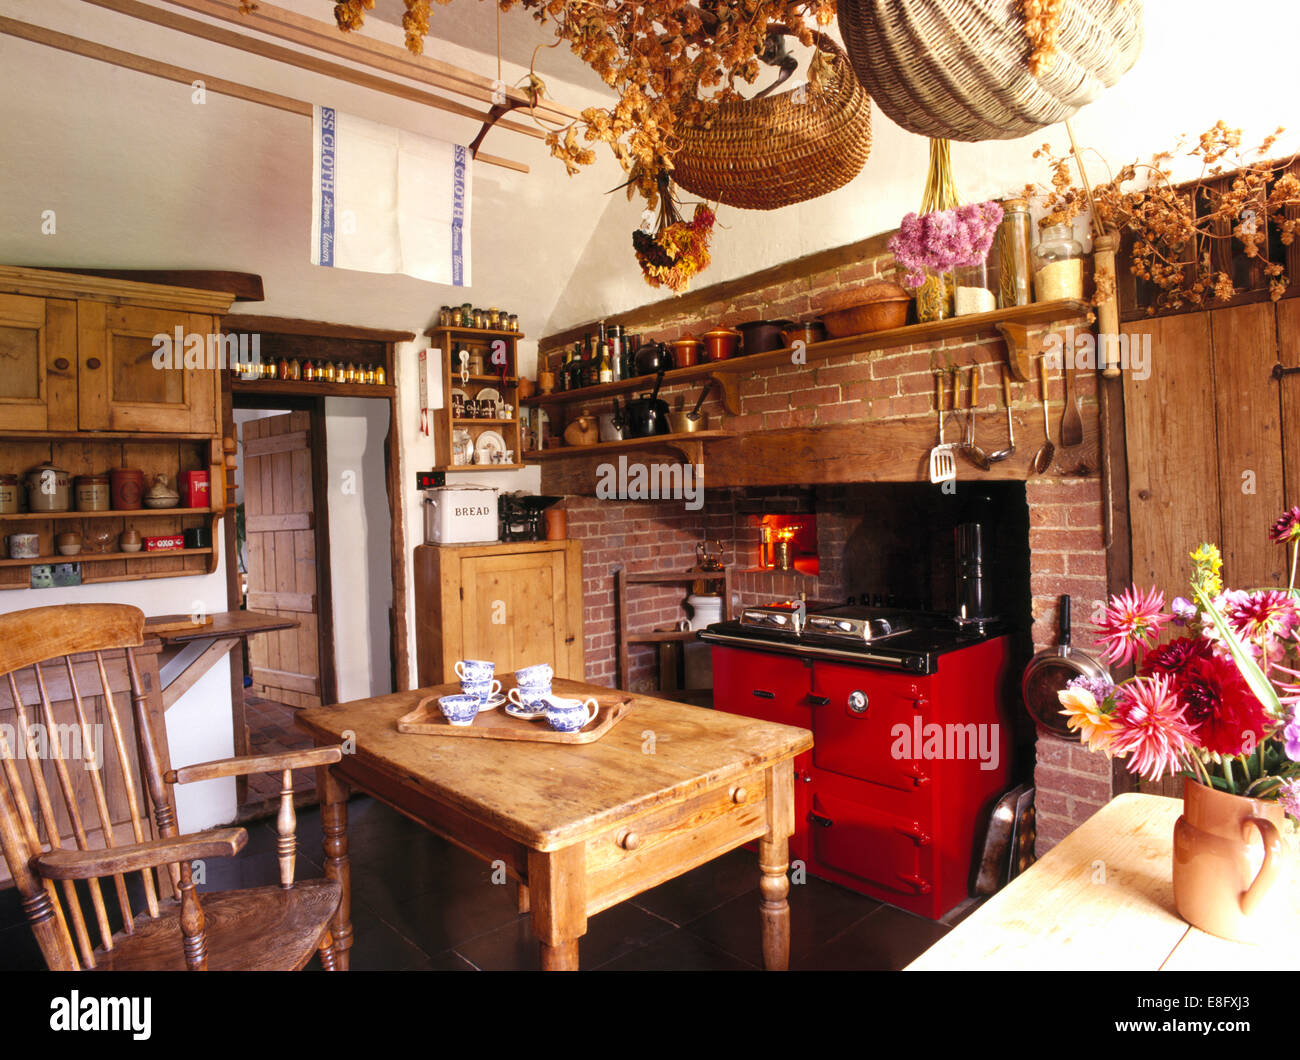 Paniers sur rack en bois au-dessus de table en vieux pin country kitchen avec Aga rouge Banque D'Images